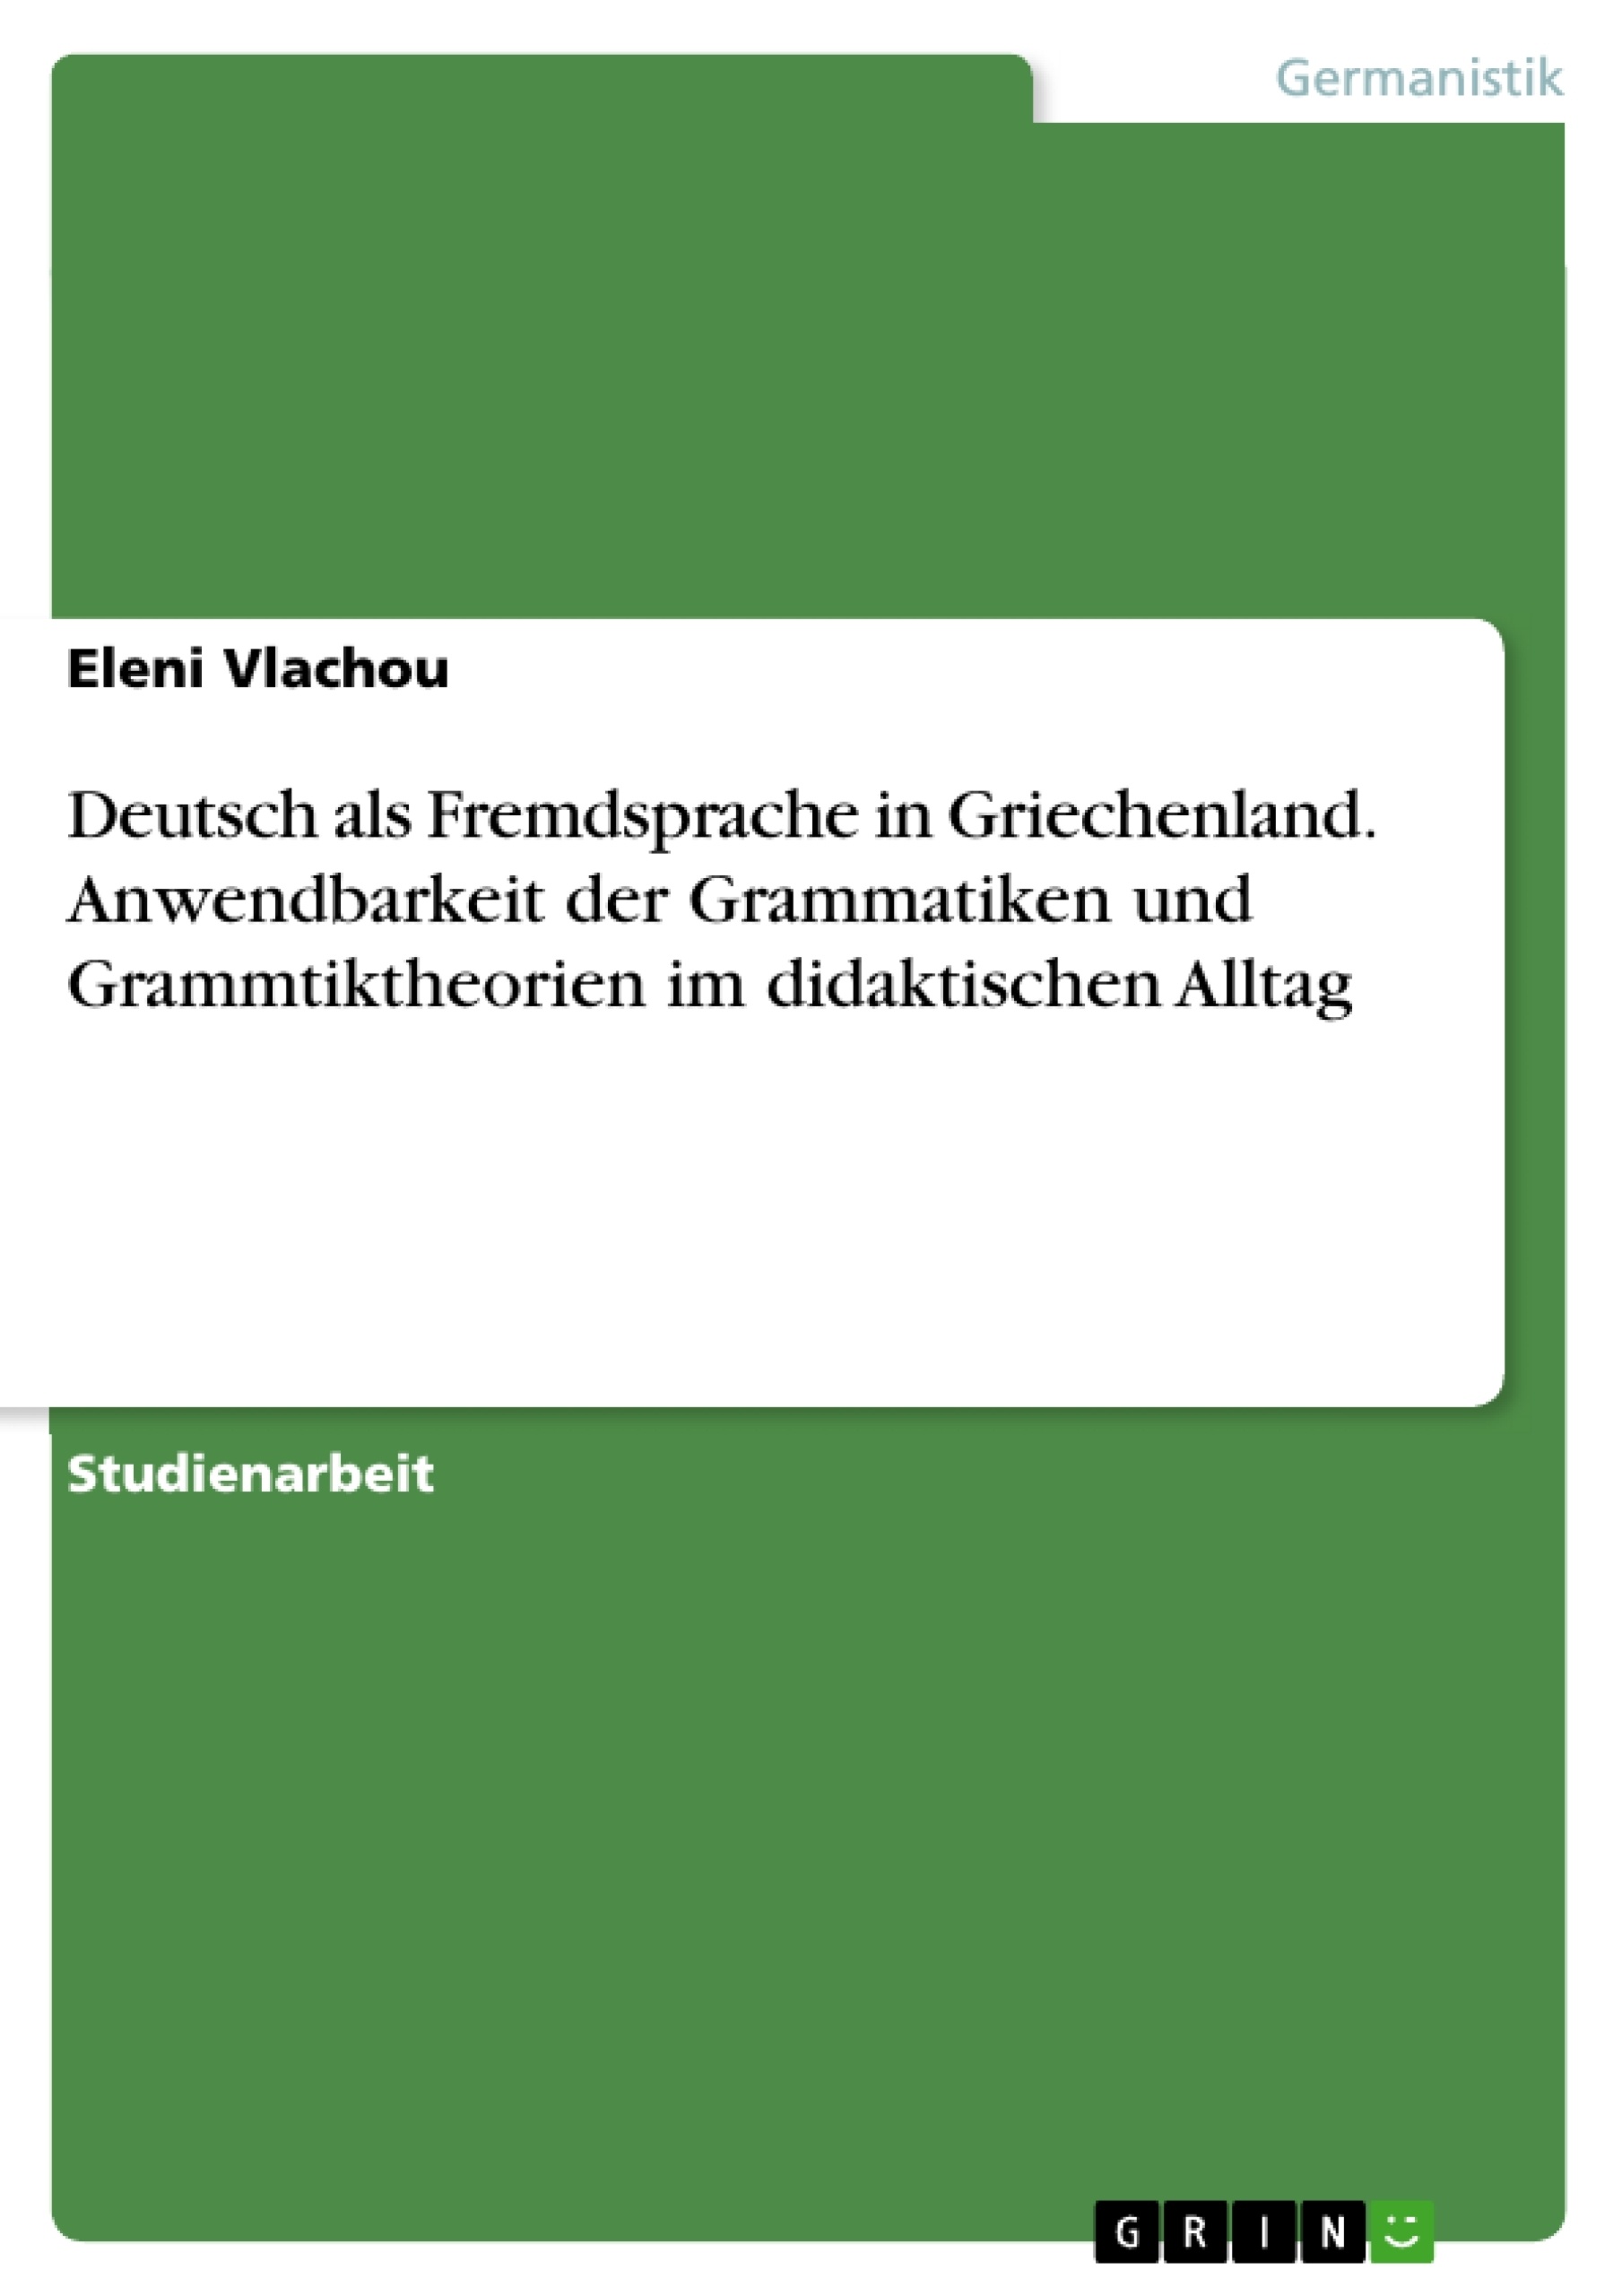 Título: Deutsch als Fremdsprache in Griechenland. Anwendbarkeit der Grammatiken und Grammtiktheorien im didaktischen Alltag